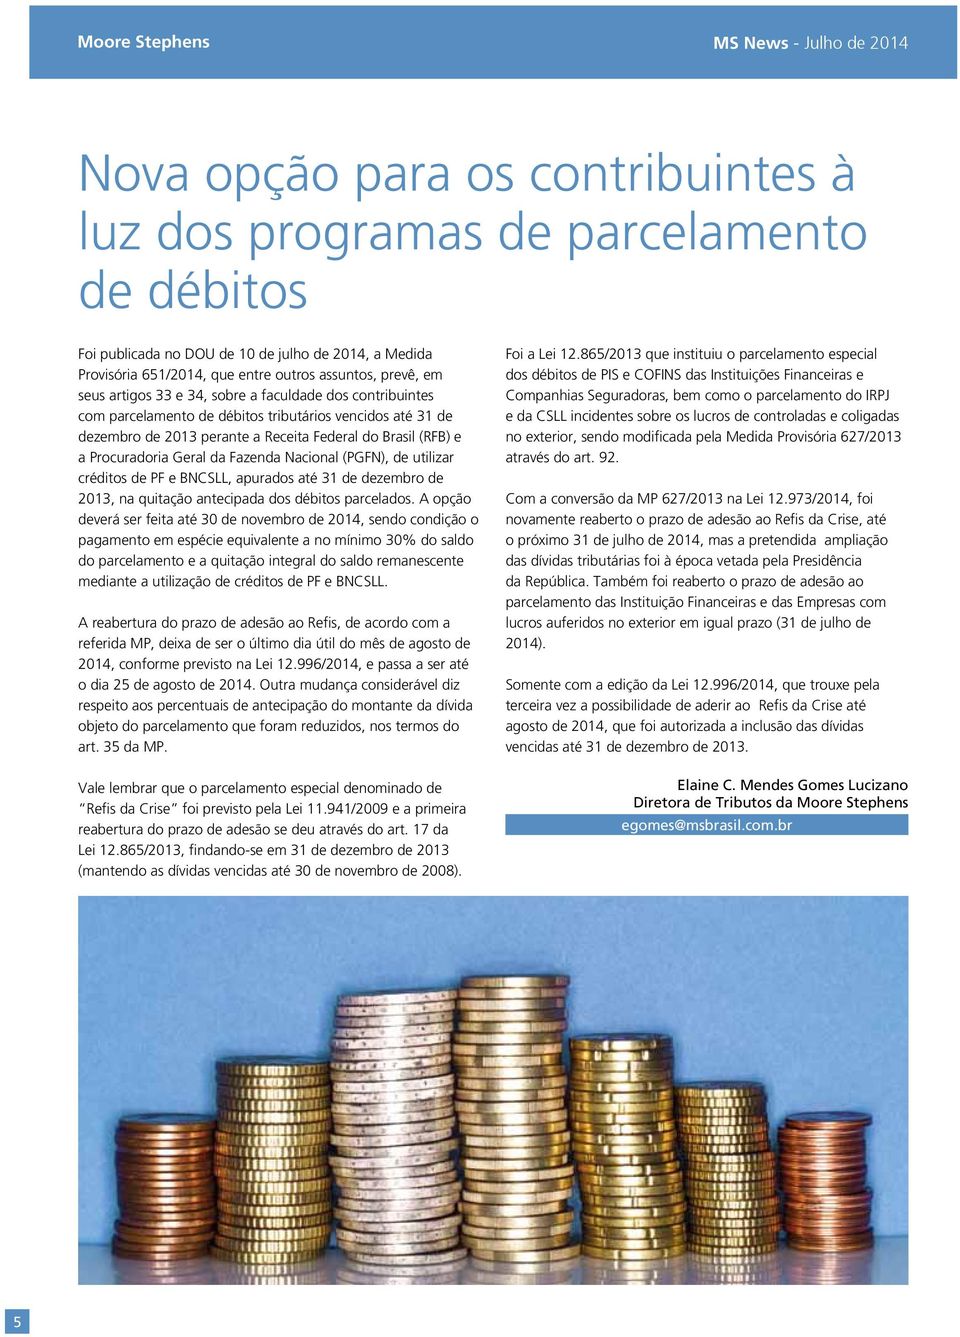 Brasil (RFB) e a Procuradoria Geral da Fazenda Nacional (PGFN), de utilizar créditos de PF e BNCSLL, apurados até 31 de dezembro de 2013, na quitação antecipada dos débitos parcelados.